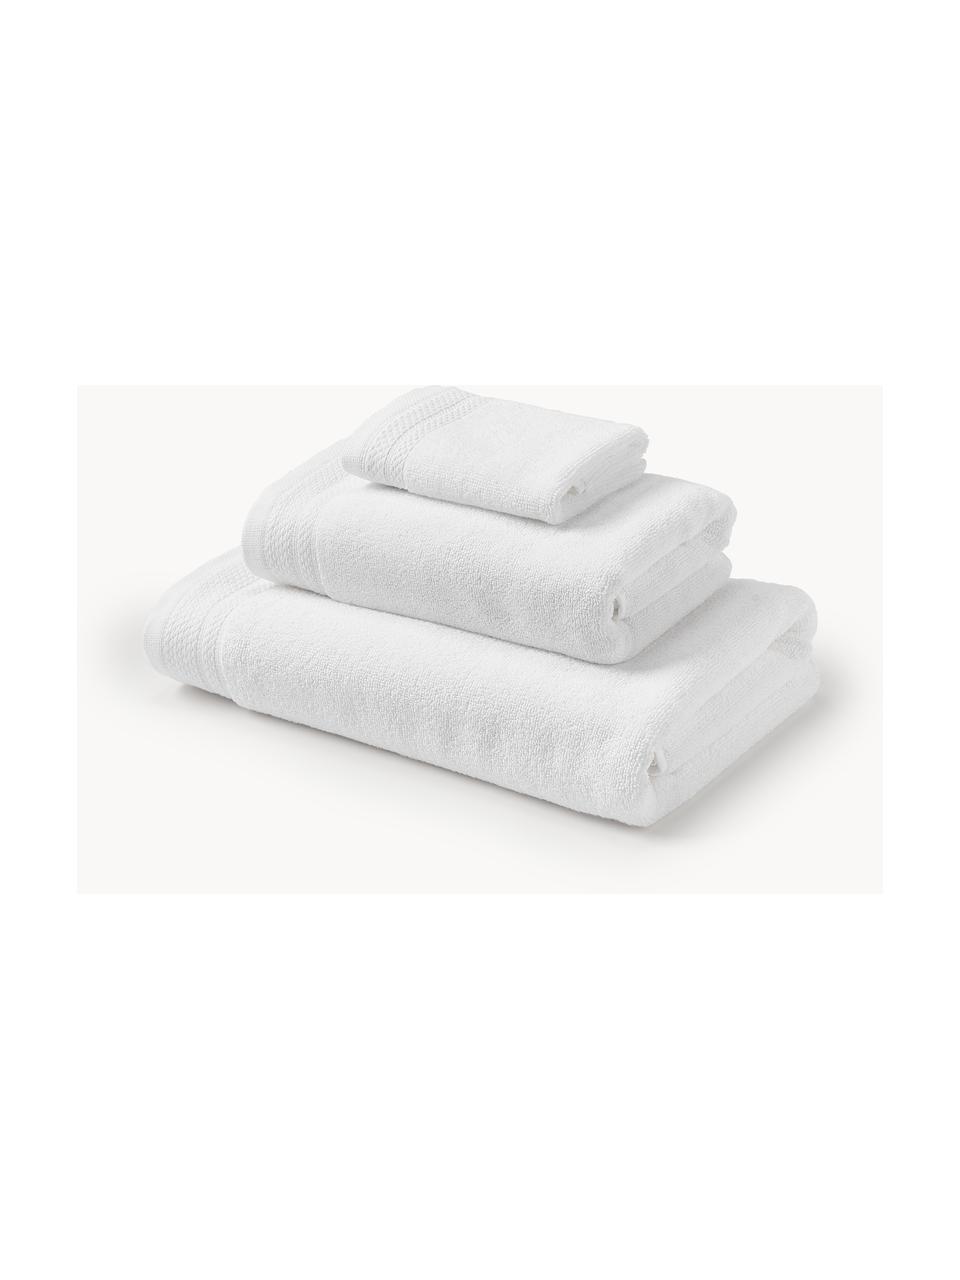 Toallas blancas 100% algodón | Calidad Premium | Royal Shop